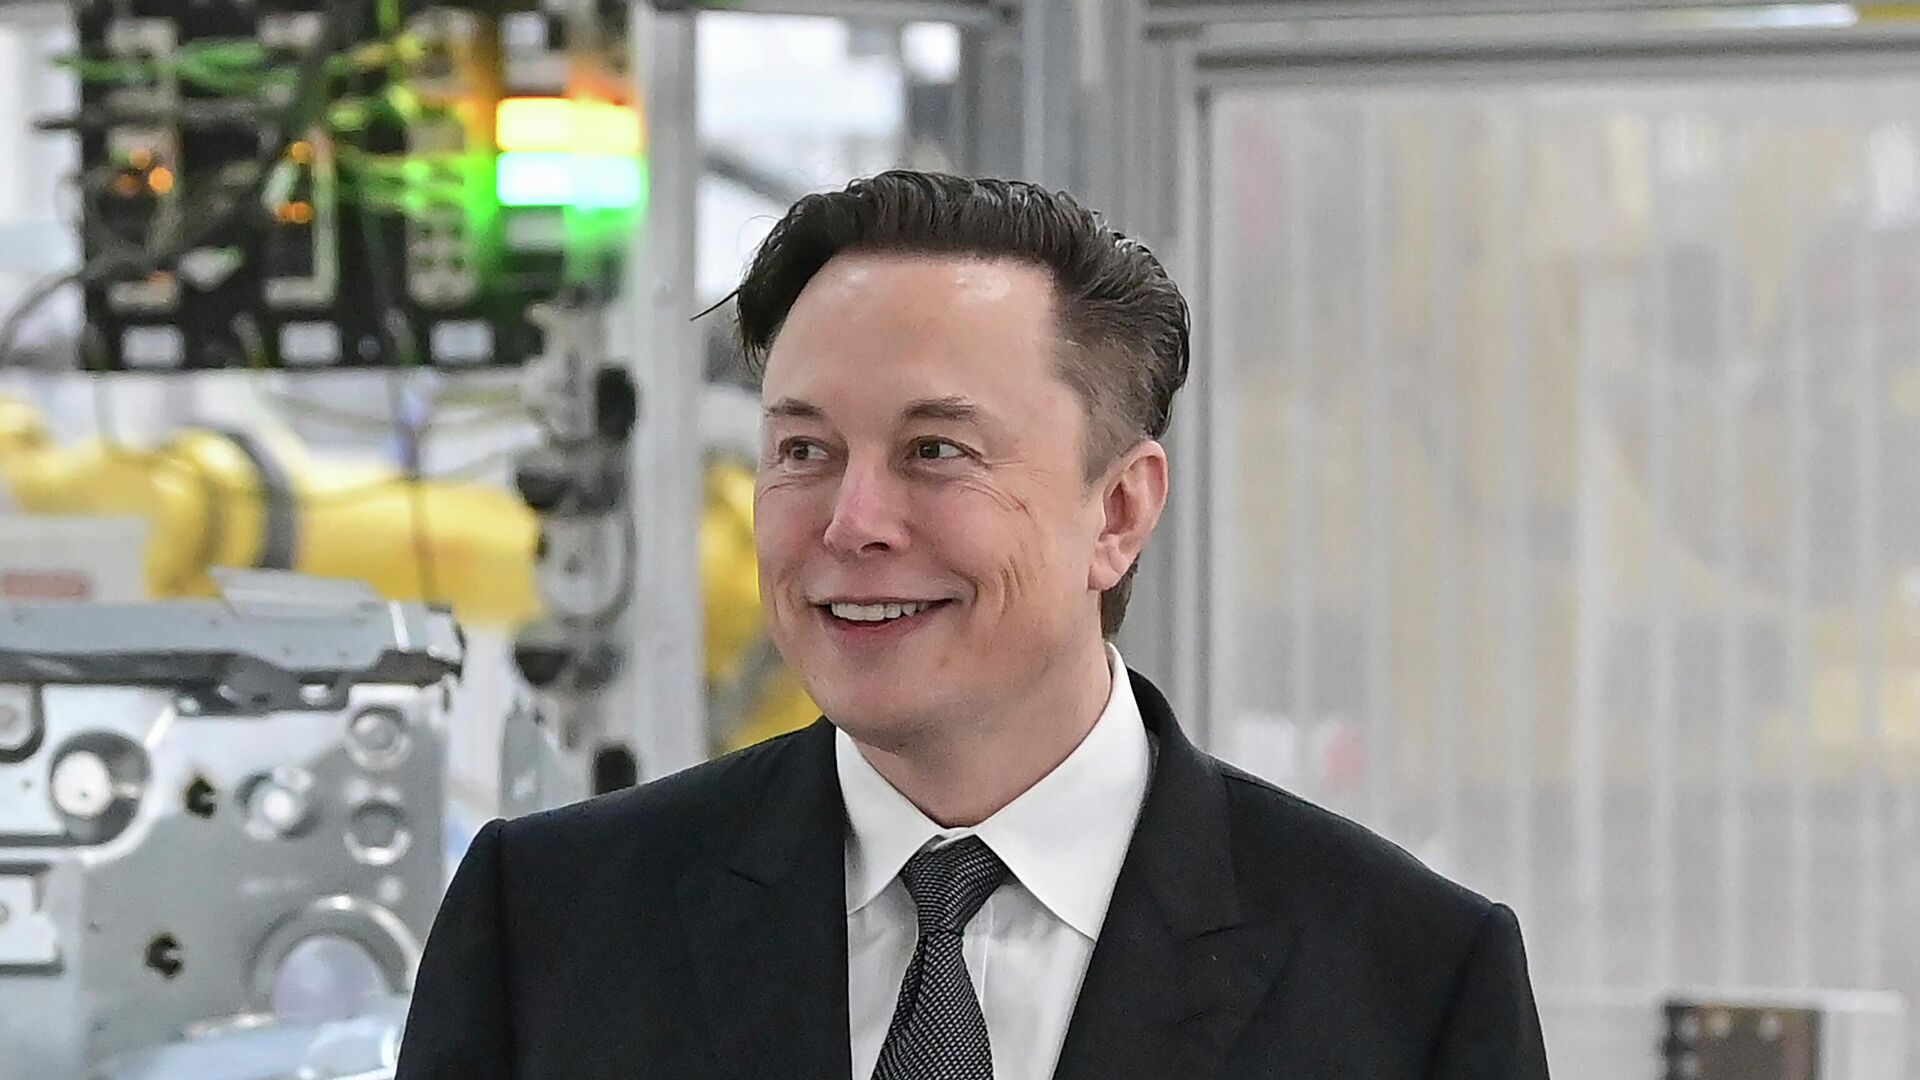  Tesla CEO Elon Musk attends the opening of the Tesla factory Berlin Brandenburg in Gruenheide, Germany on March 22, 2022. - Sputnik International, 1920, 22.06.2022